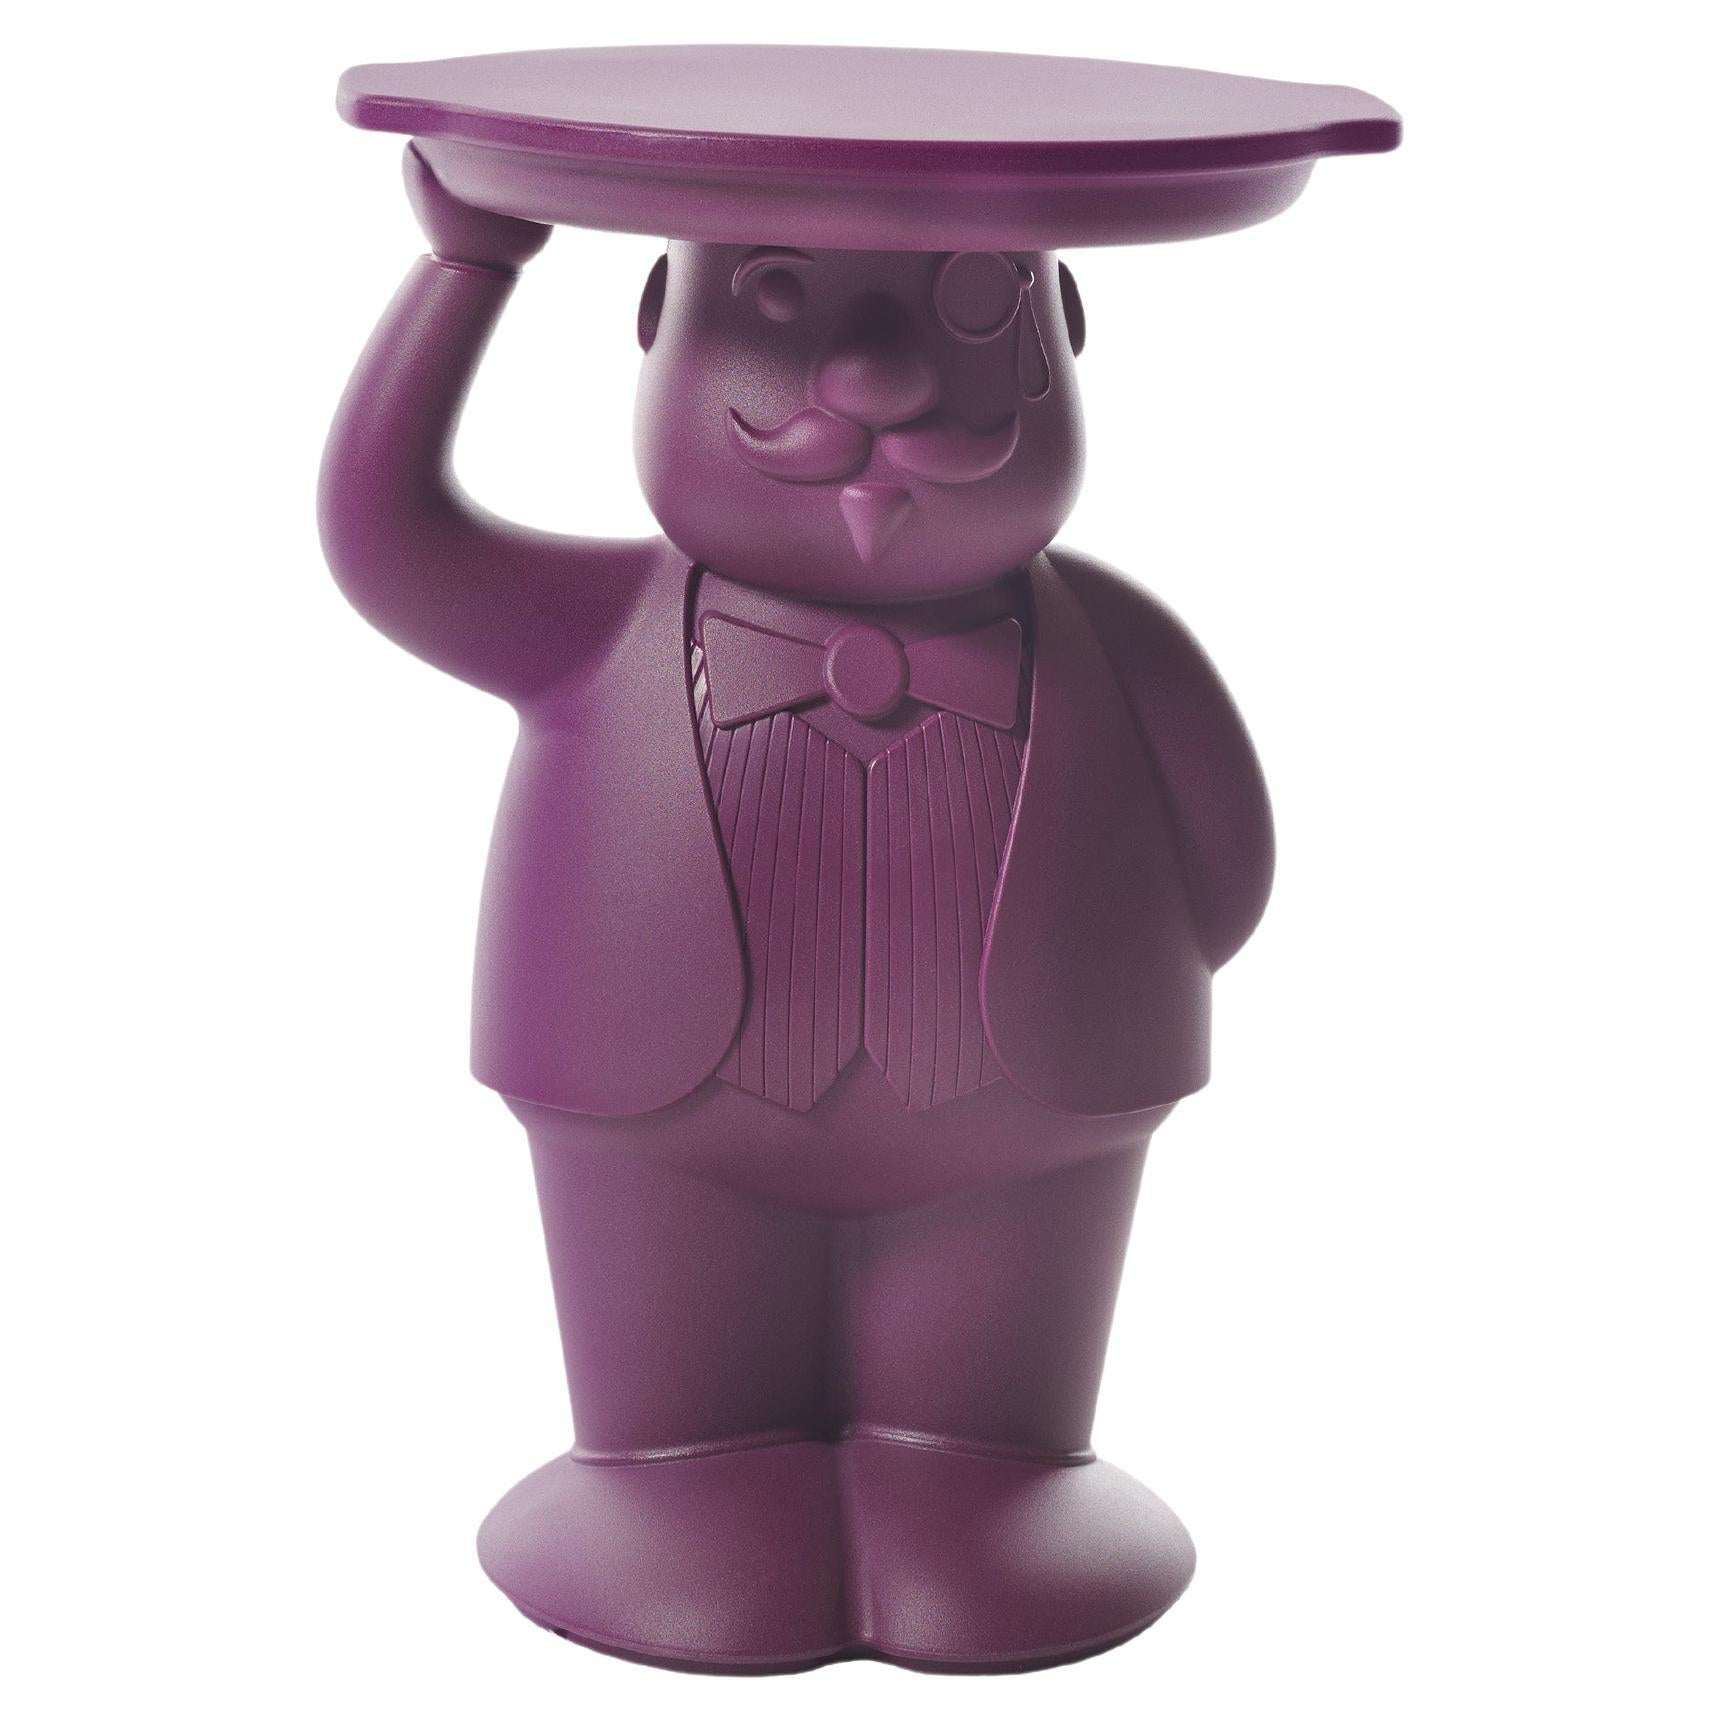 Slide Design Ambrogio Servant Table in Plum Purple by Favaretto & Partners